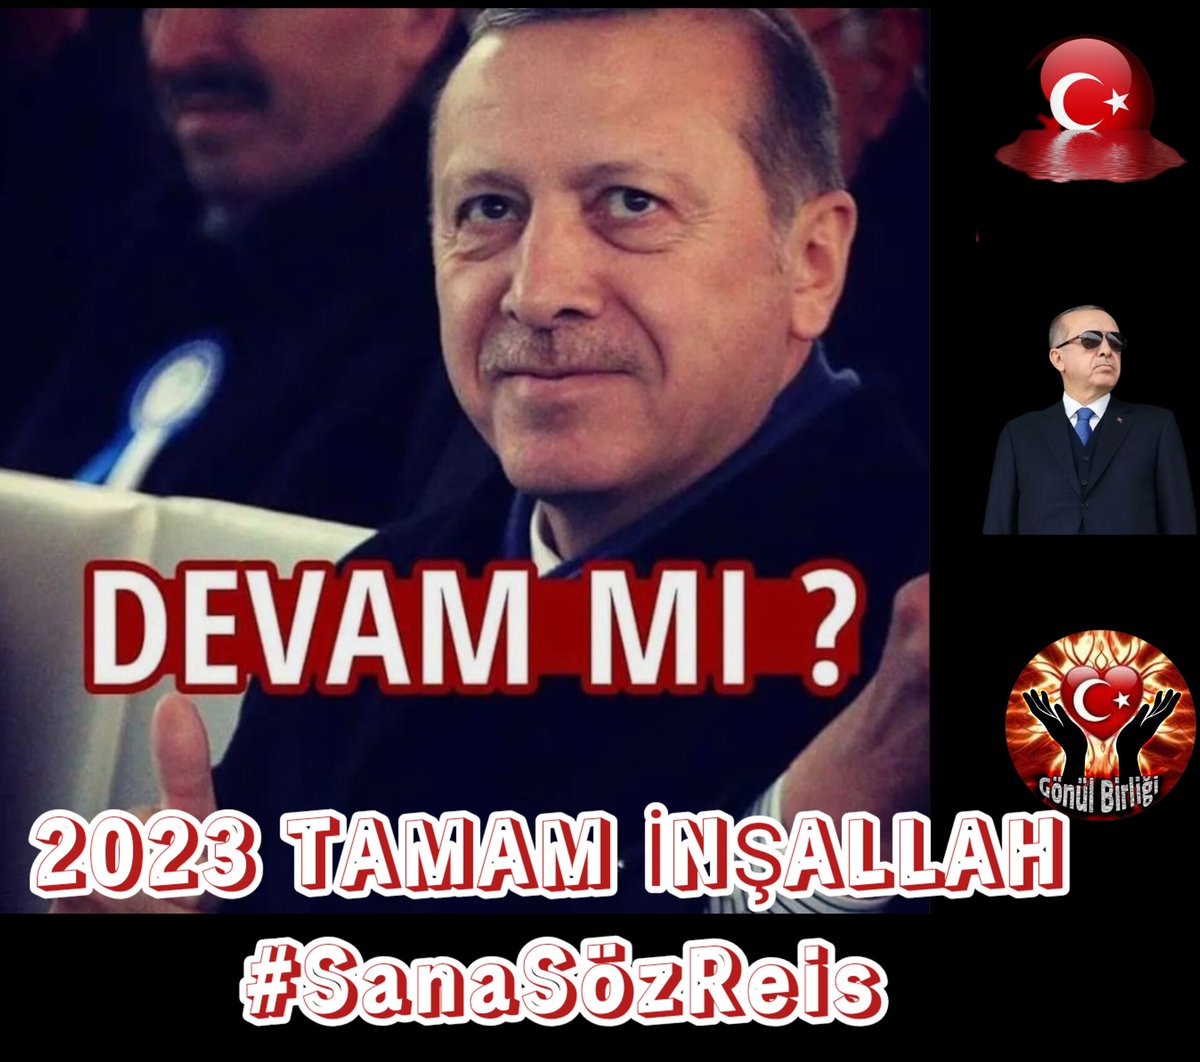 Recep Tayyip Erdoğan'ı niye bu kadar çok destekliyorsun diye soruyorlar .. 

Kardeşim!!
Biz orucu kiminle tuttuysak,
İftarıda onunla açarız..
DEVAMMM !!! 

2023 TAMAM İNŞALLAH 
#SanaSözReis